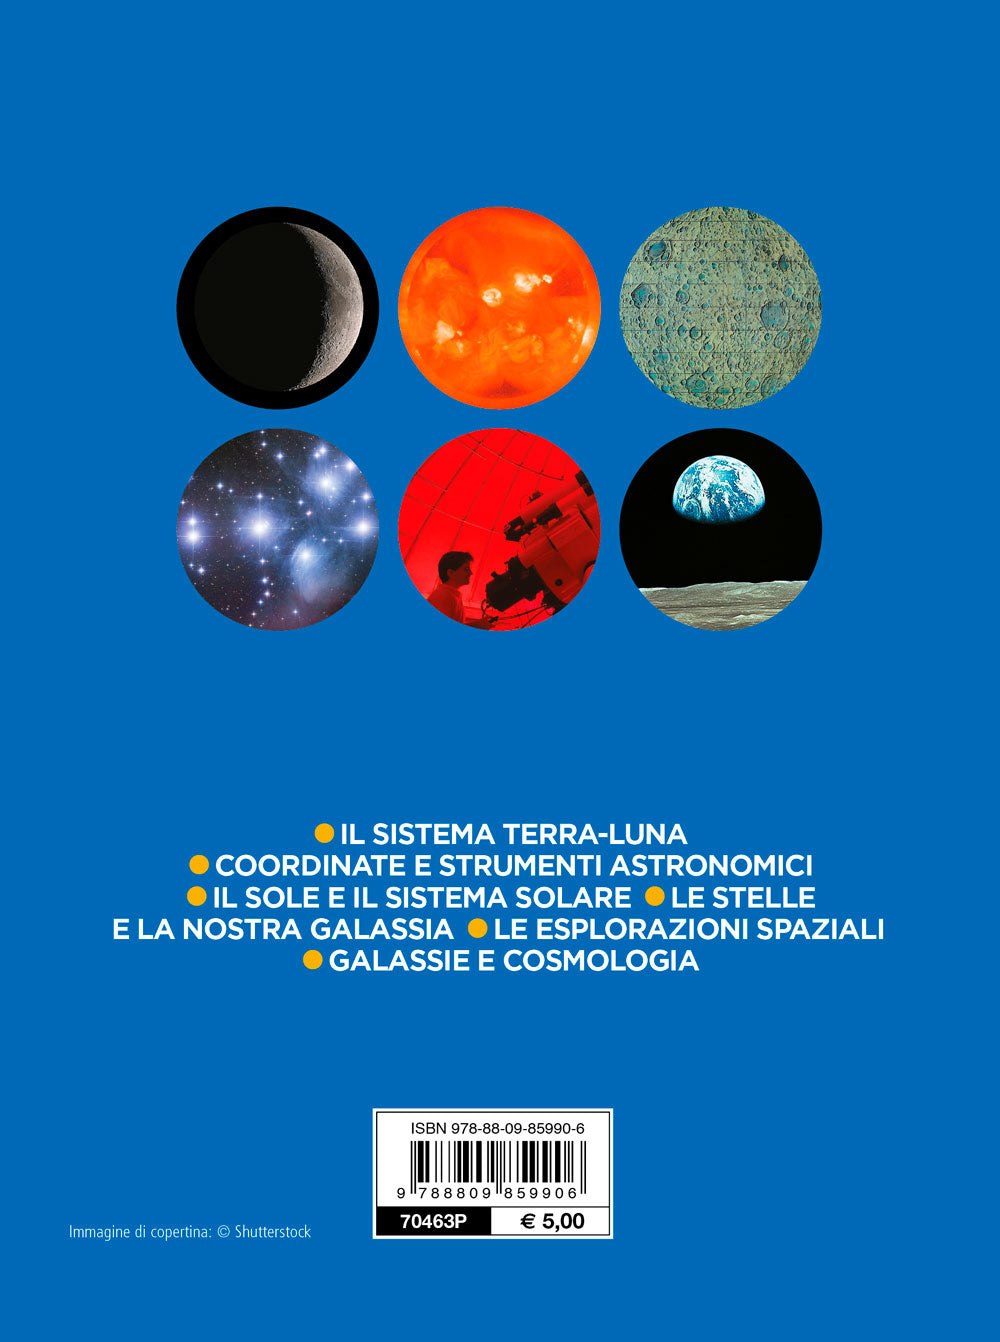 Astronomia. Il sistema Terra-Luna -  Coordinate e strumenti astronomici - Il Sole e il sistema solare - Le stelle e la nostra Galassia - Le esplorazioni spaziali - Galassie e cosmologia